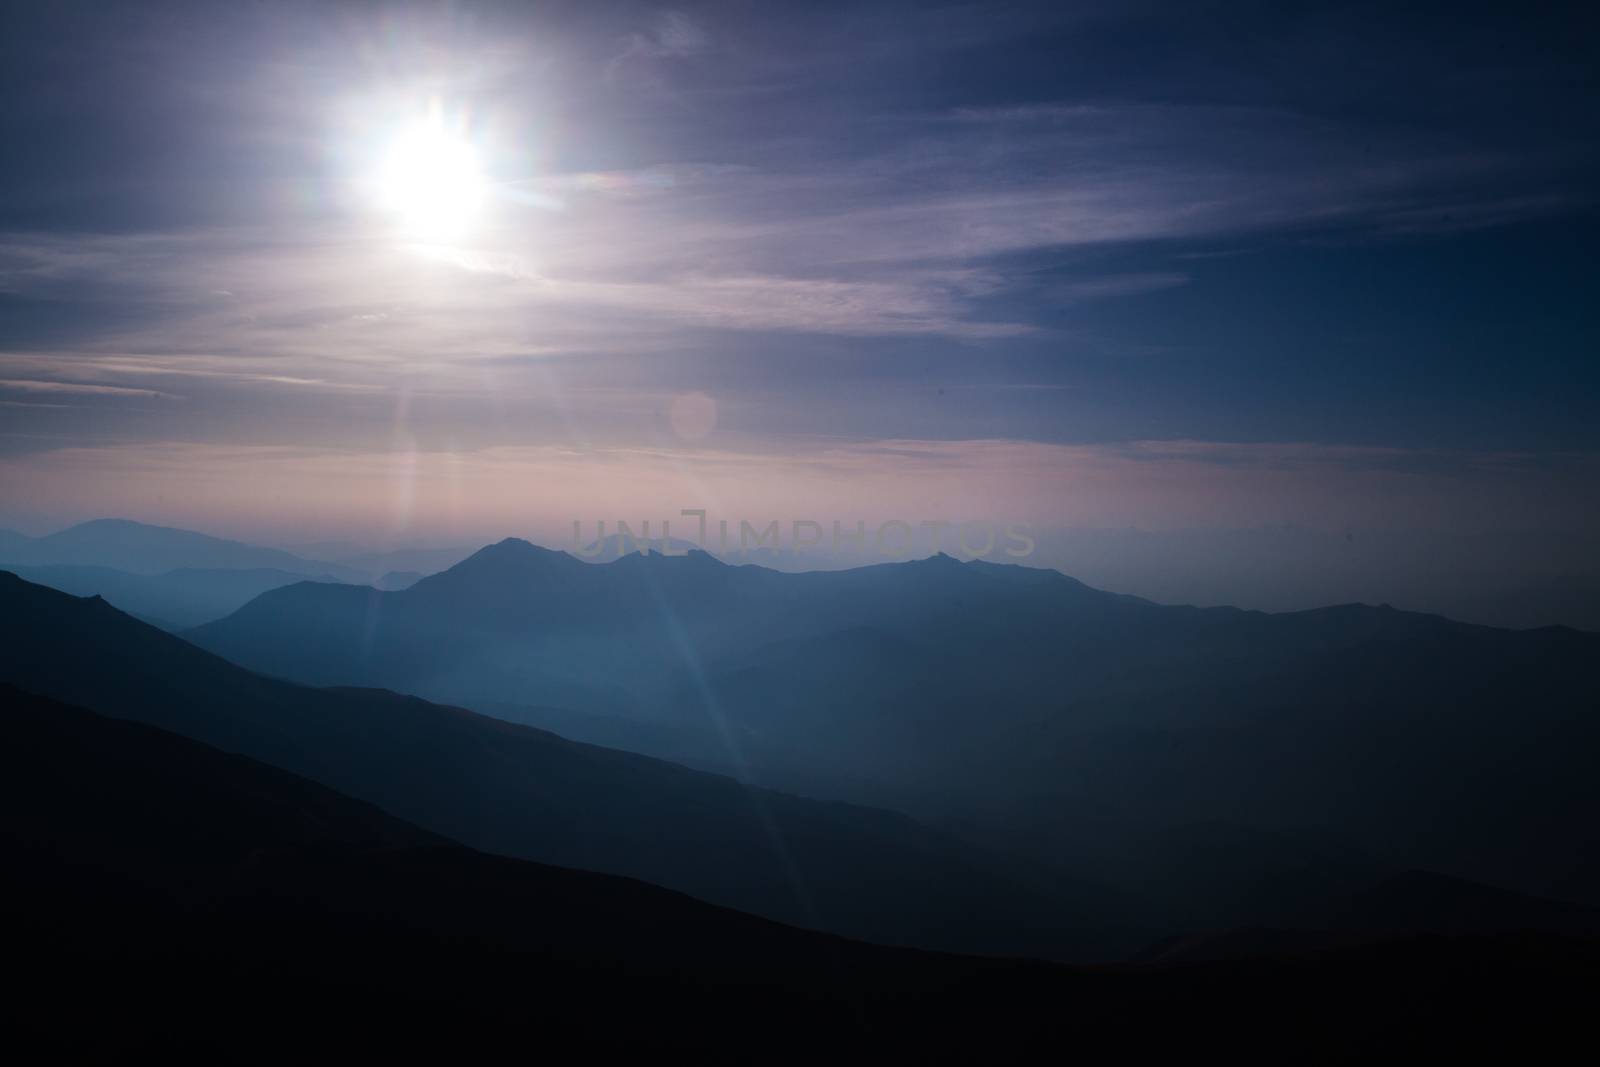 mountain silhouettes by kokimk